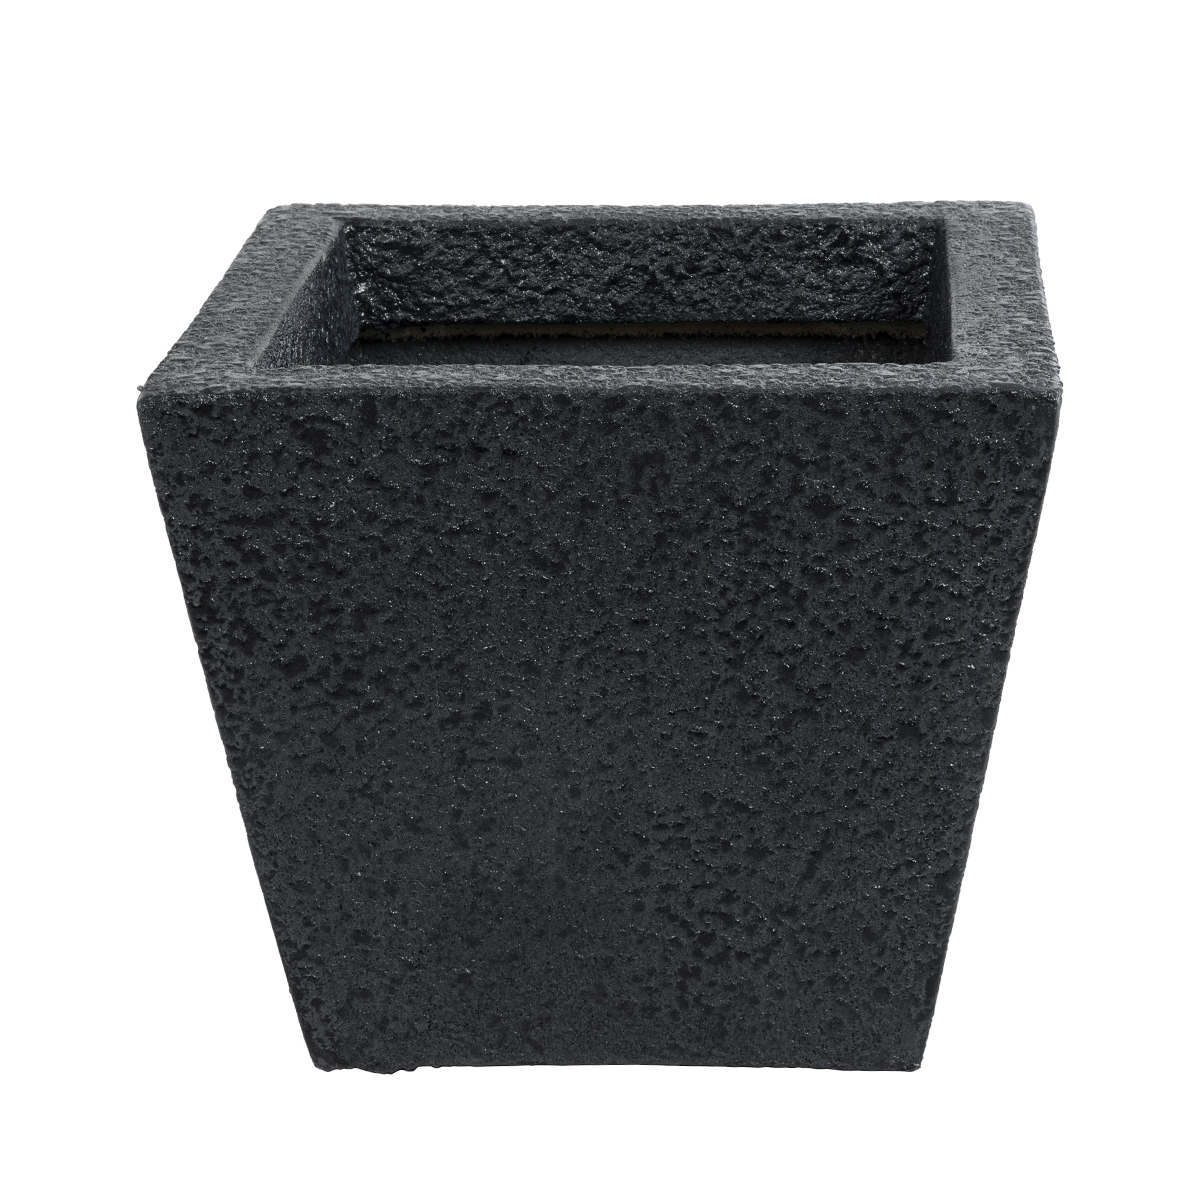 GloboStar® Artificial Garden KARRASPIO 20770 Επιδαπέδιο Πολυεστερικό Τσιμεντένιο Κασπώ Γλάστρα – Flower Pot Μαύρο Μ34 x Π34 x Υ30cm